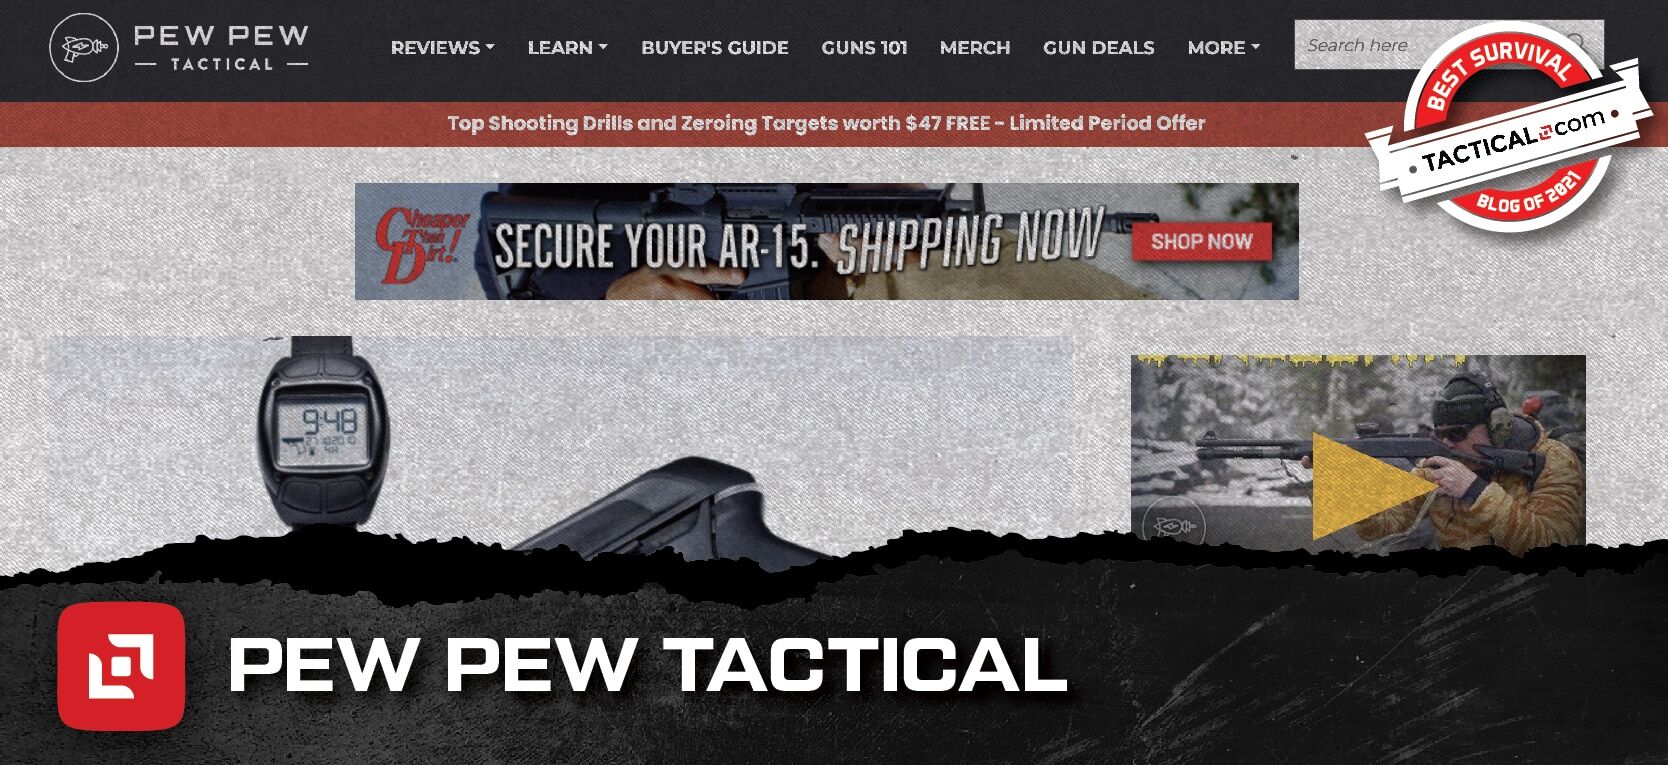 Pew Pew Tactical homepage